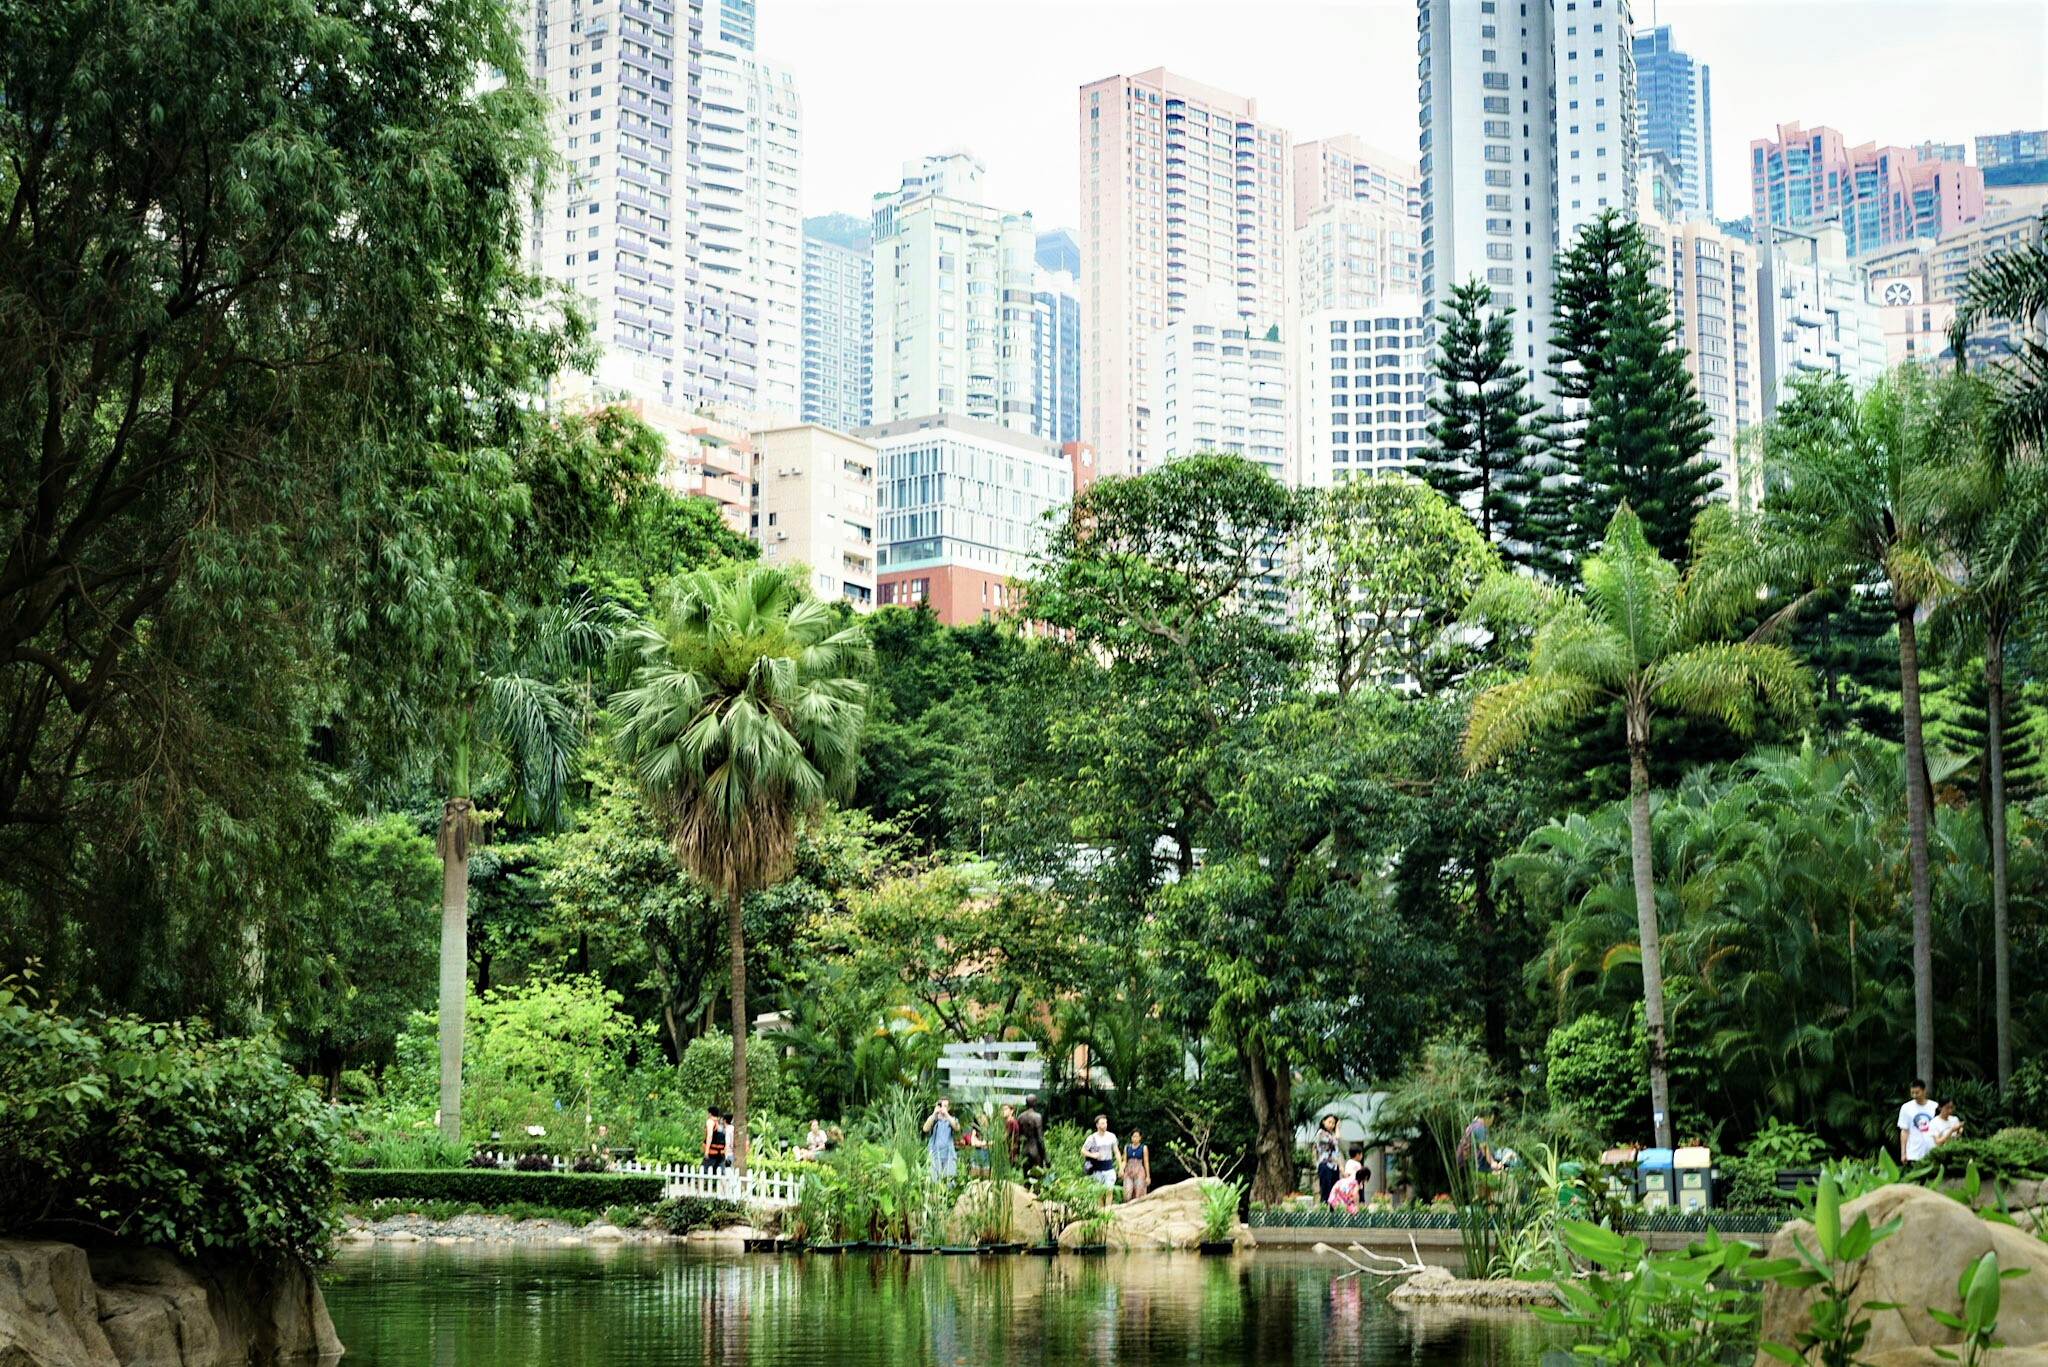 Hong Kong park